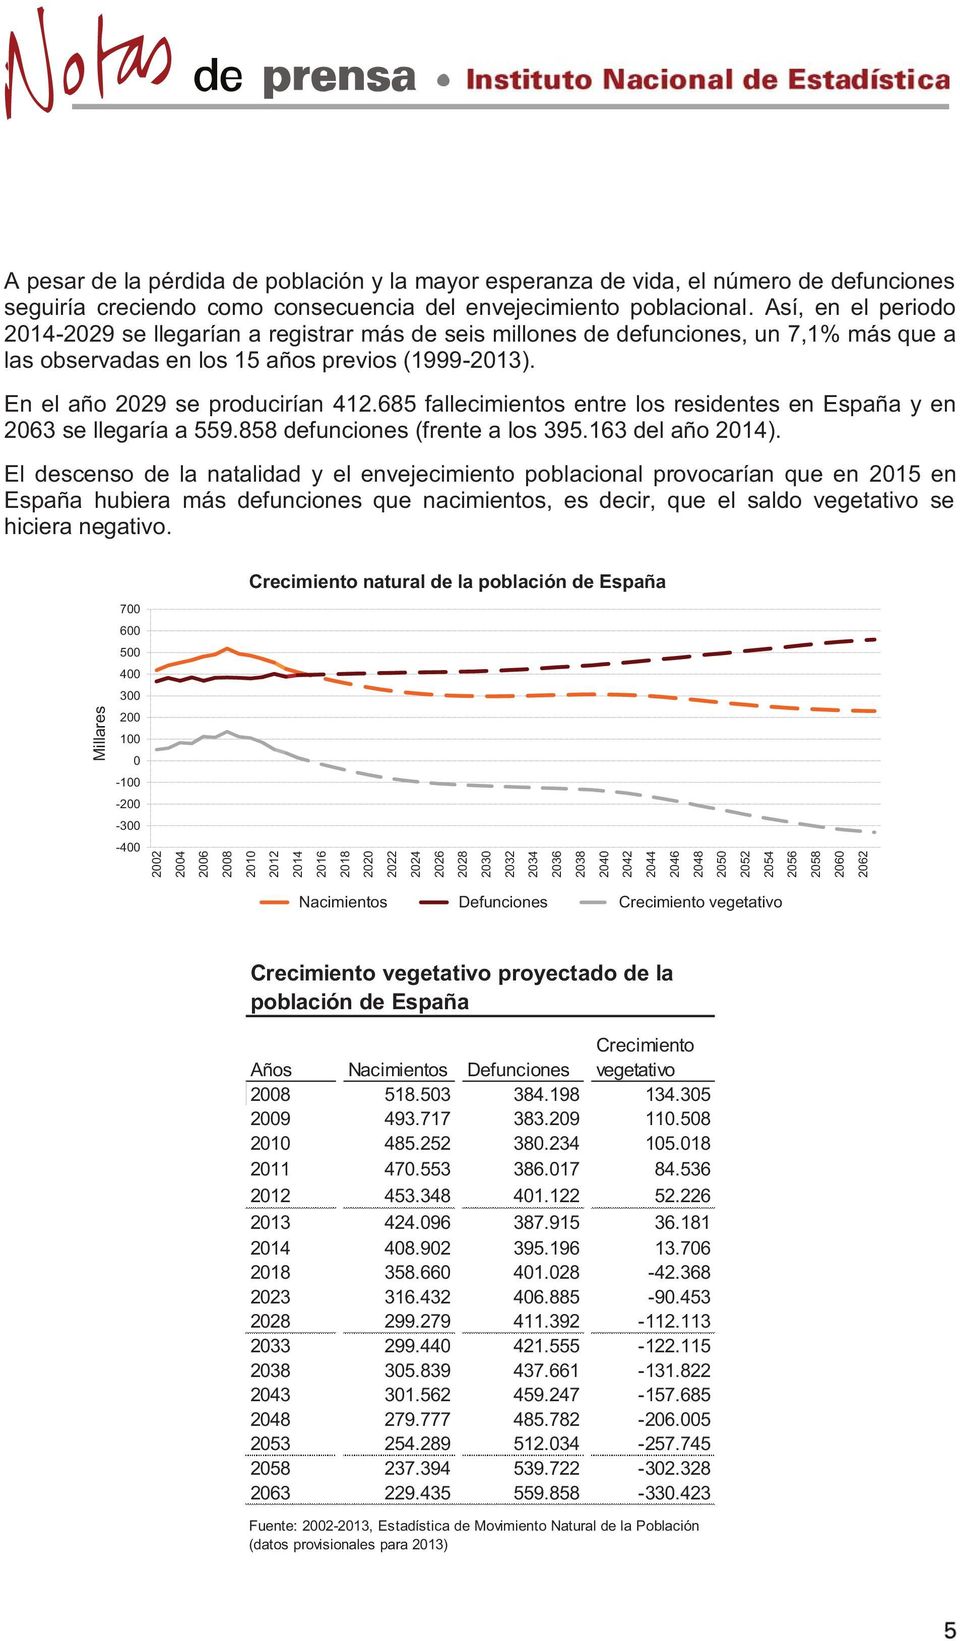 685 fallecimientos entre los residentes en España y en 2063 se llegaría a 559.858 defunciones (frente a los 395.163 del año 2014).